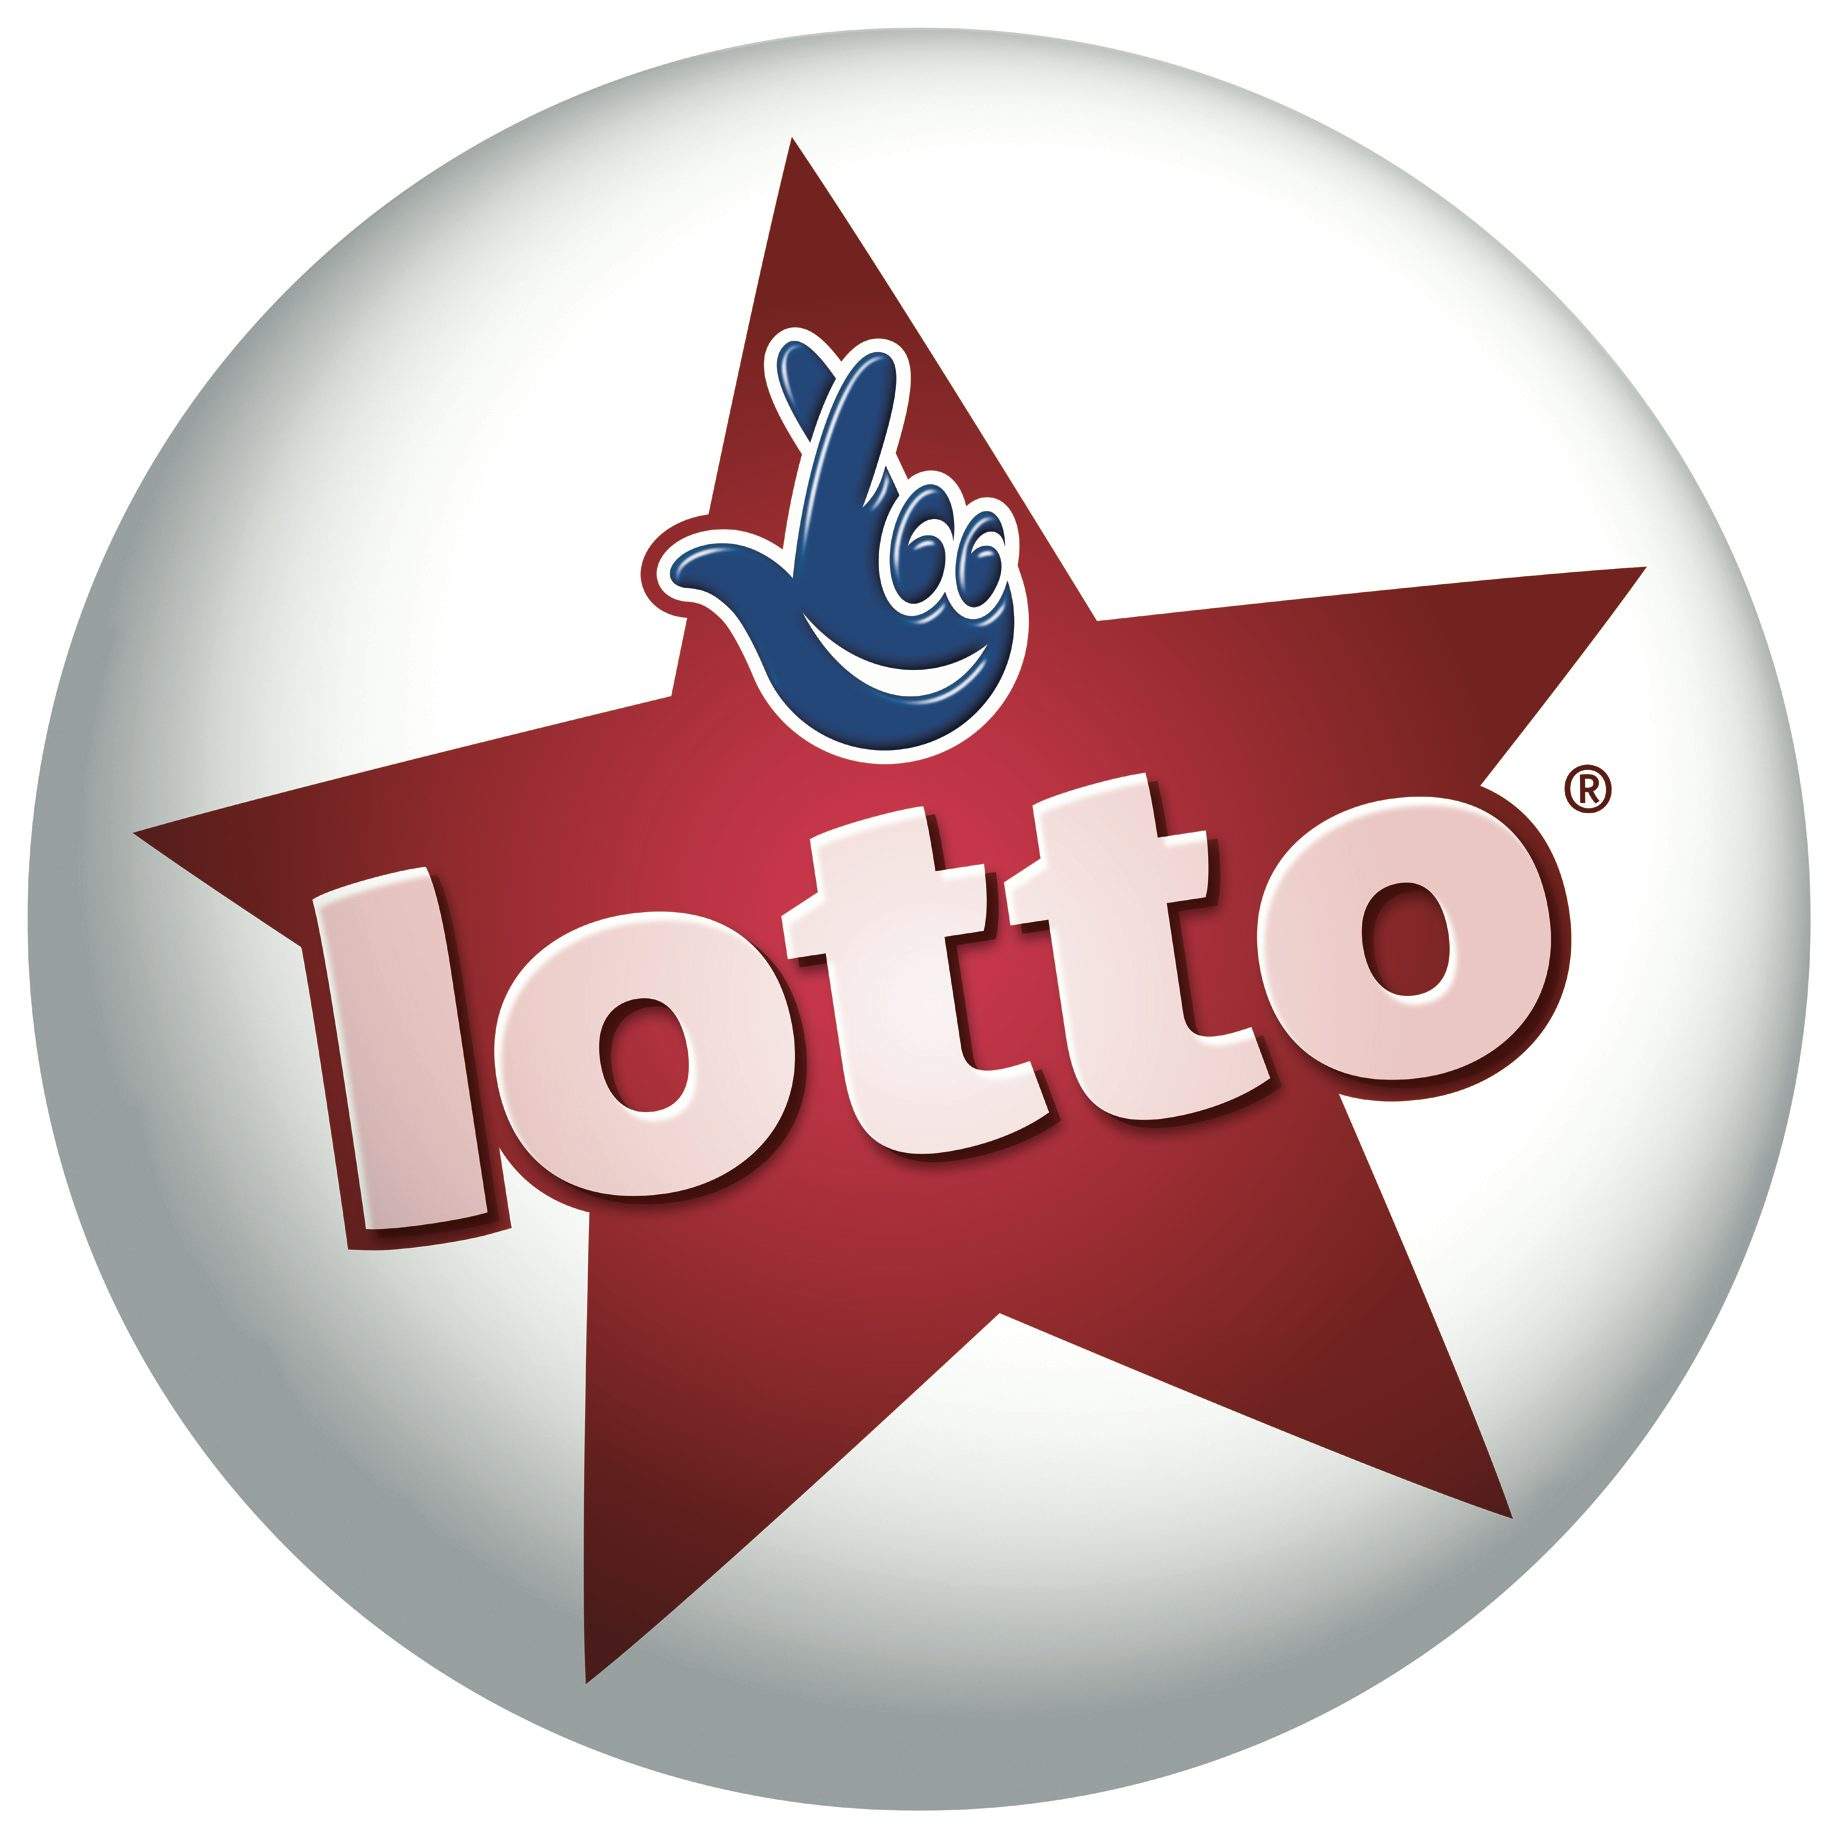 Camelot-lotto-logo-2013.460